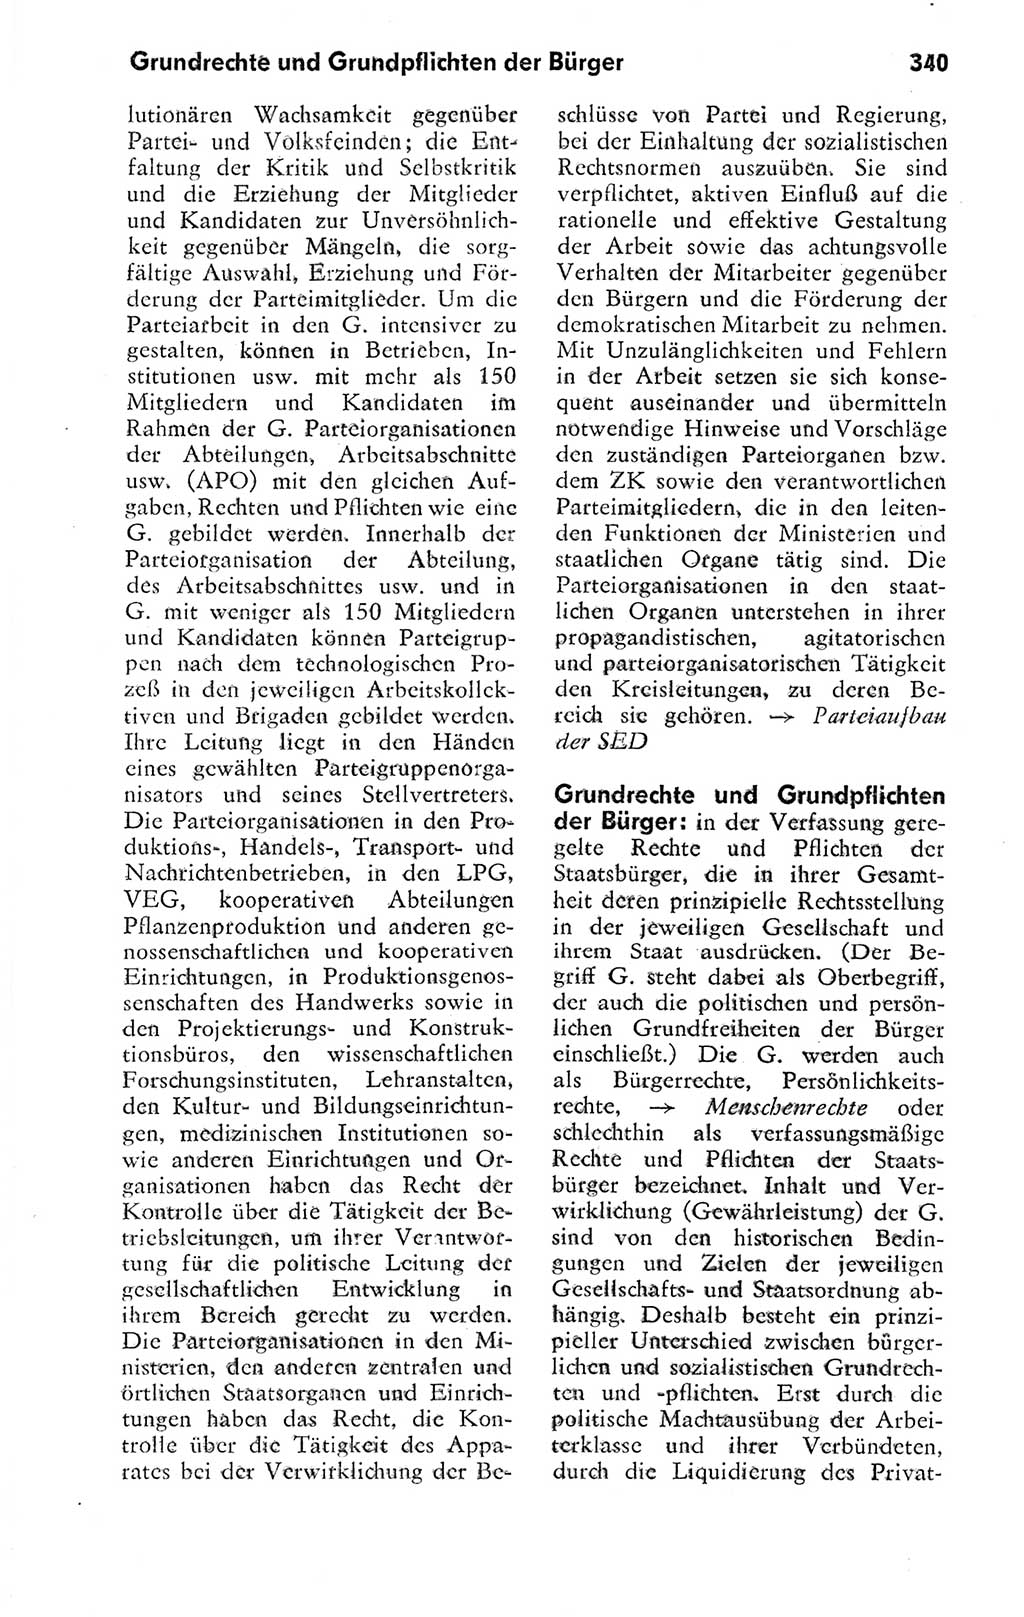 Kleines politisches Wörterbuch [Deutsche Demokratische Republik (DDR)] 1978, Seite 340 (Kl. pol. Wb. DDR 1978, S. 340)